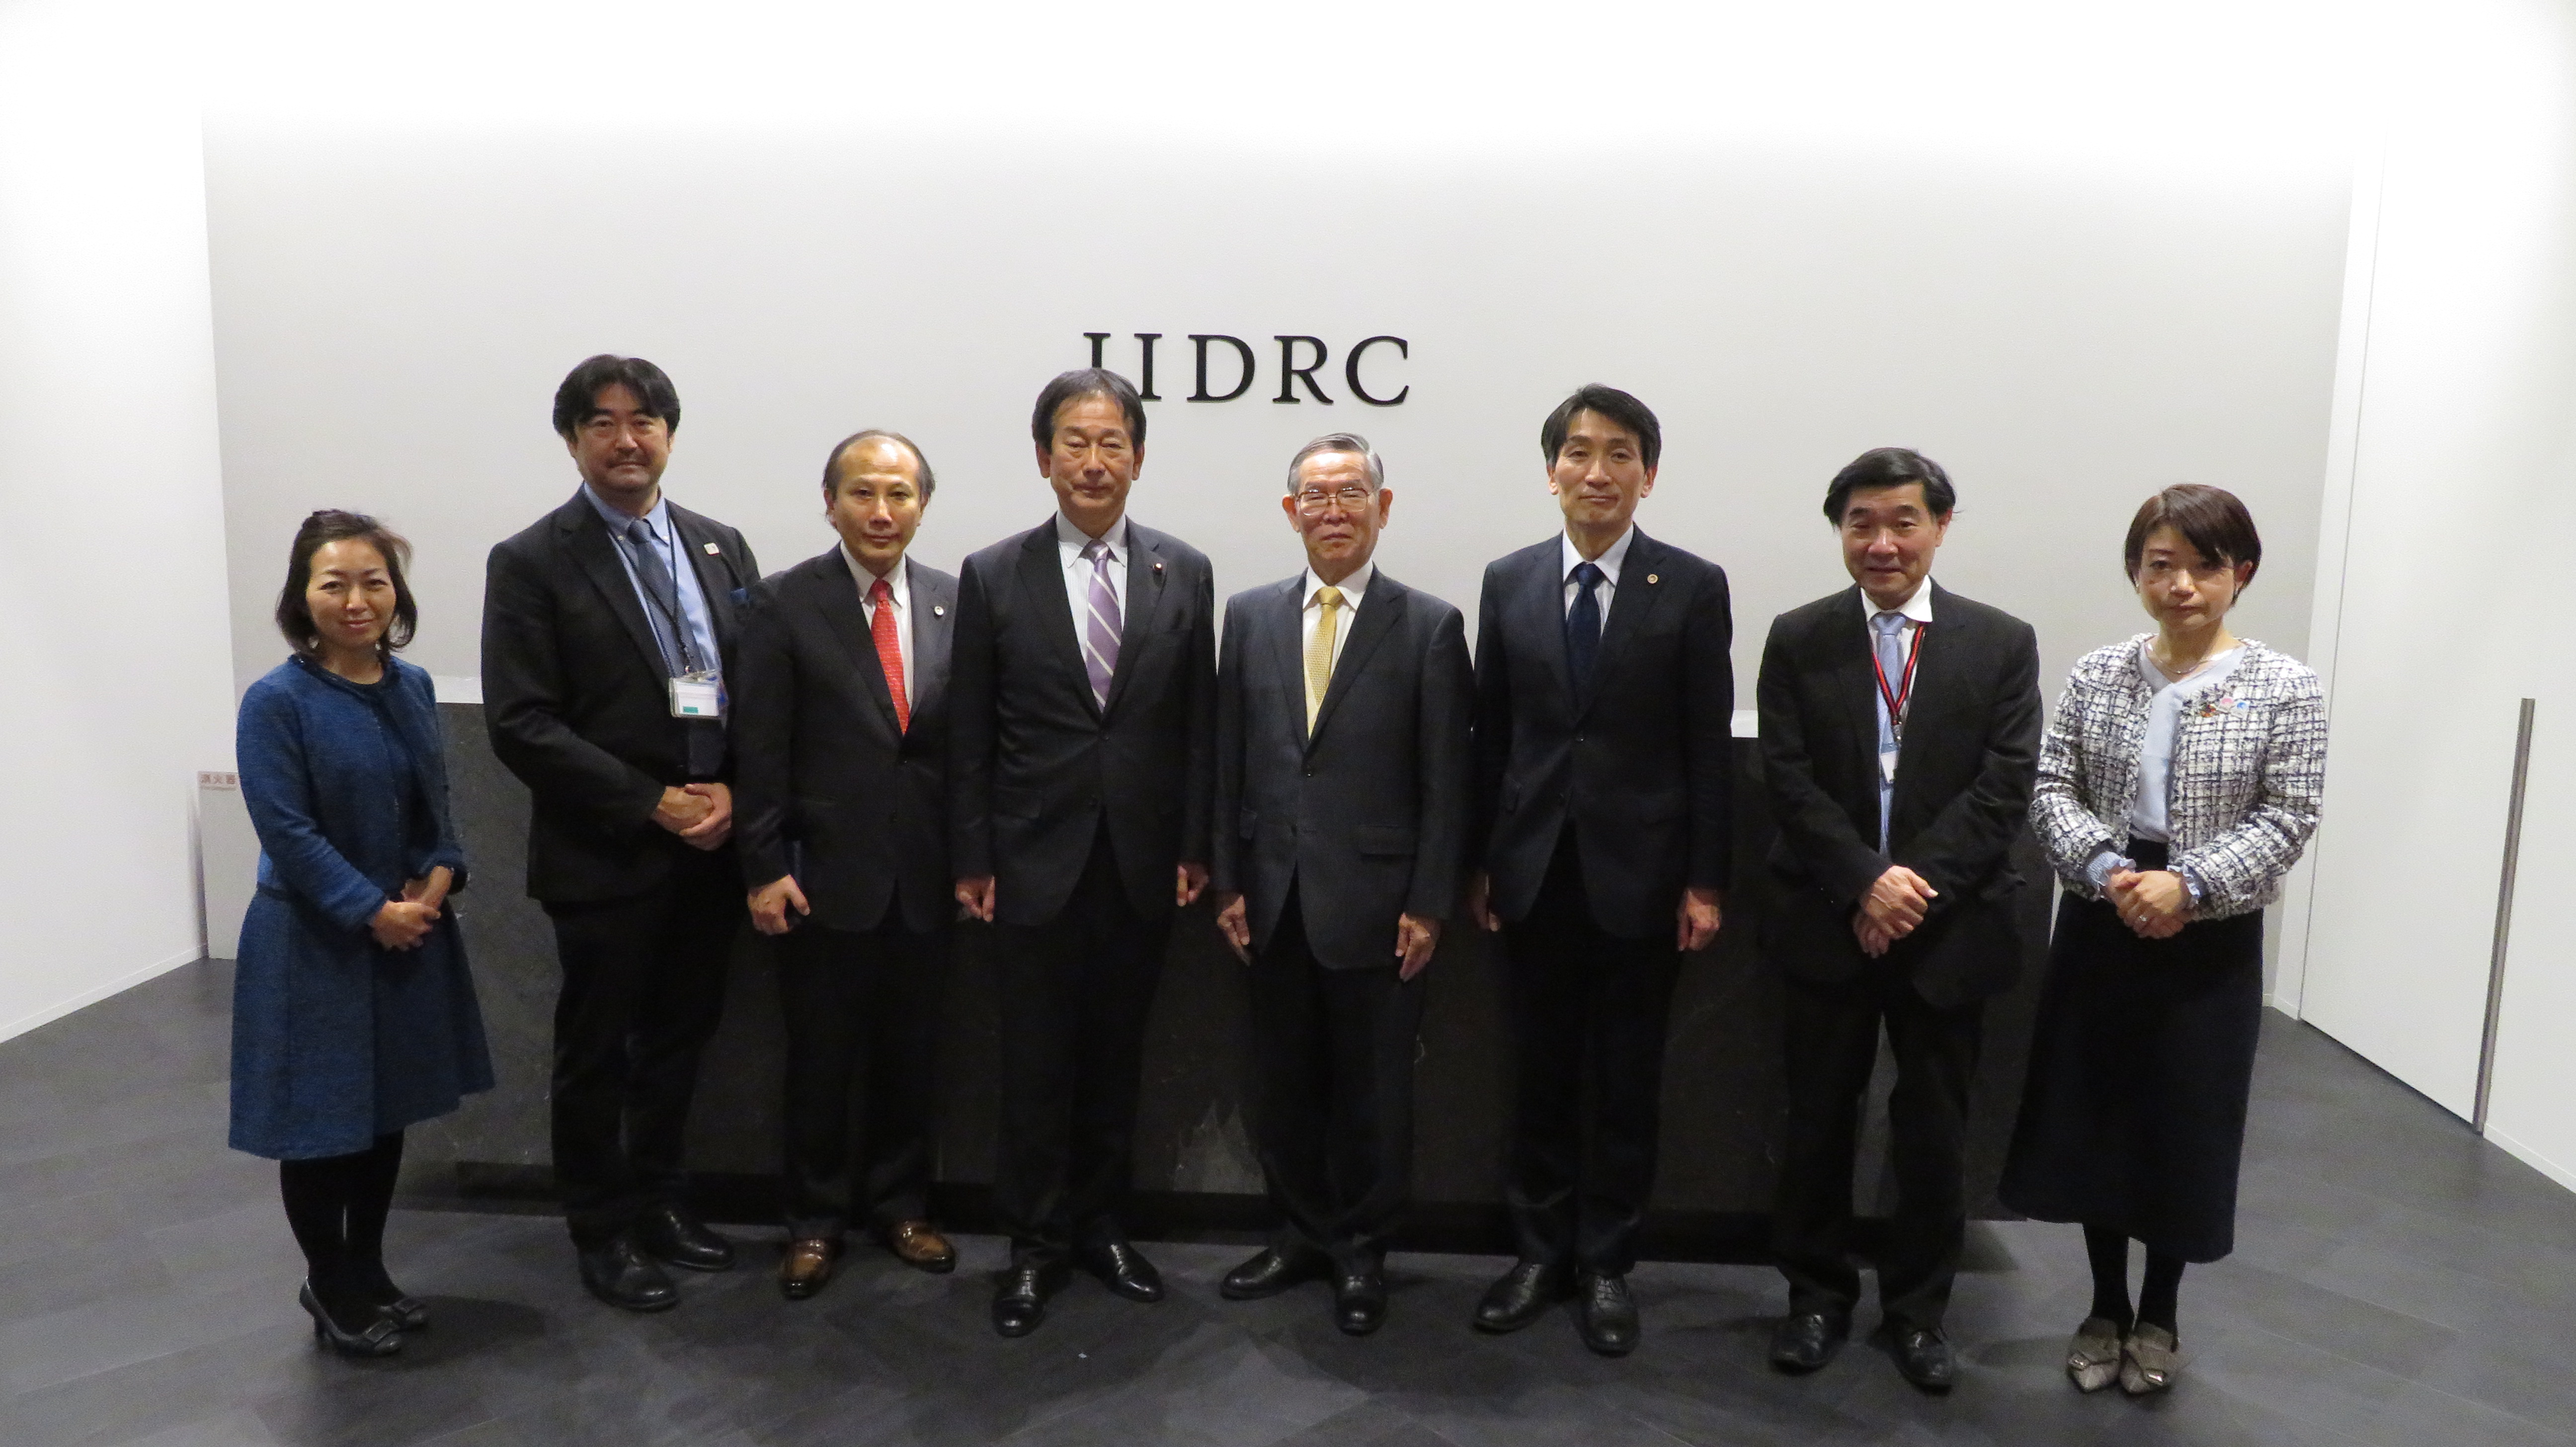 田所法務副大臣が国際仲裁専用施設である日本国際紛争解決センター（東京）を視察しました。